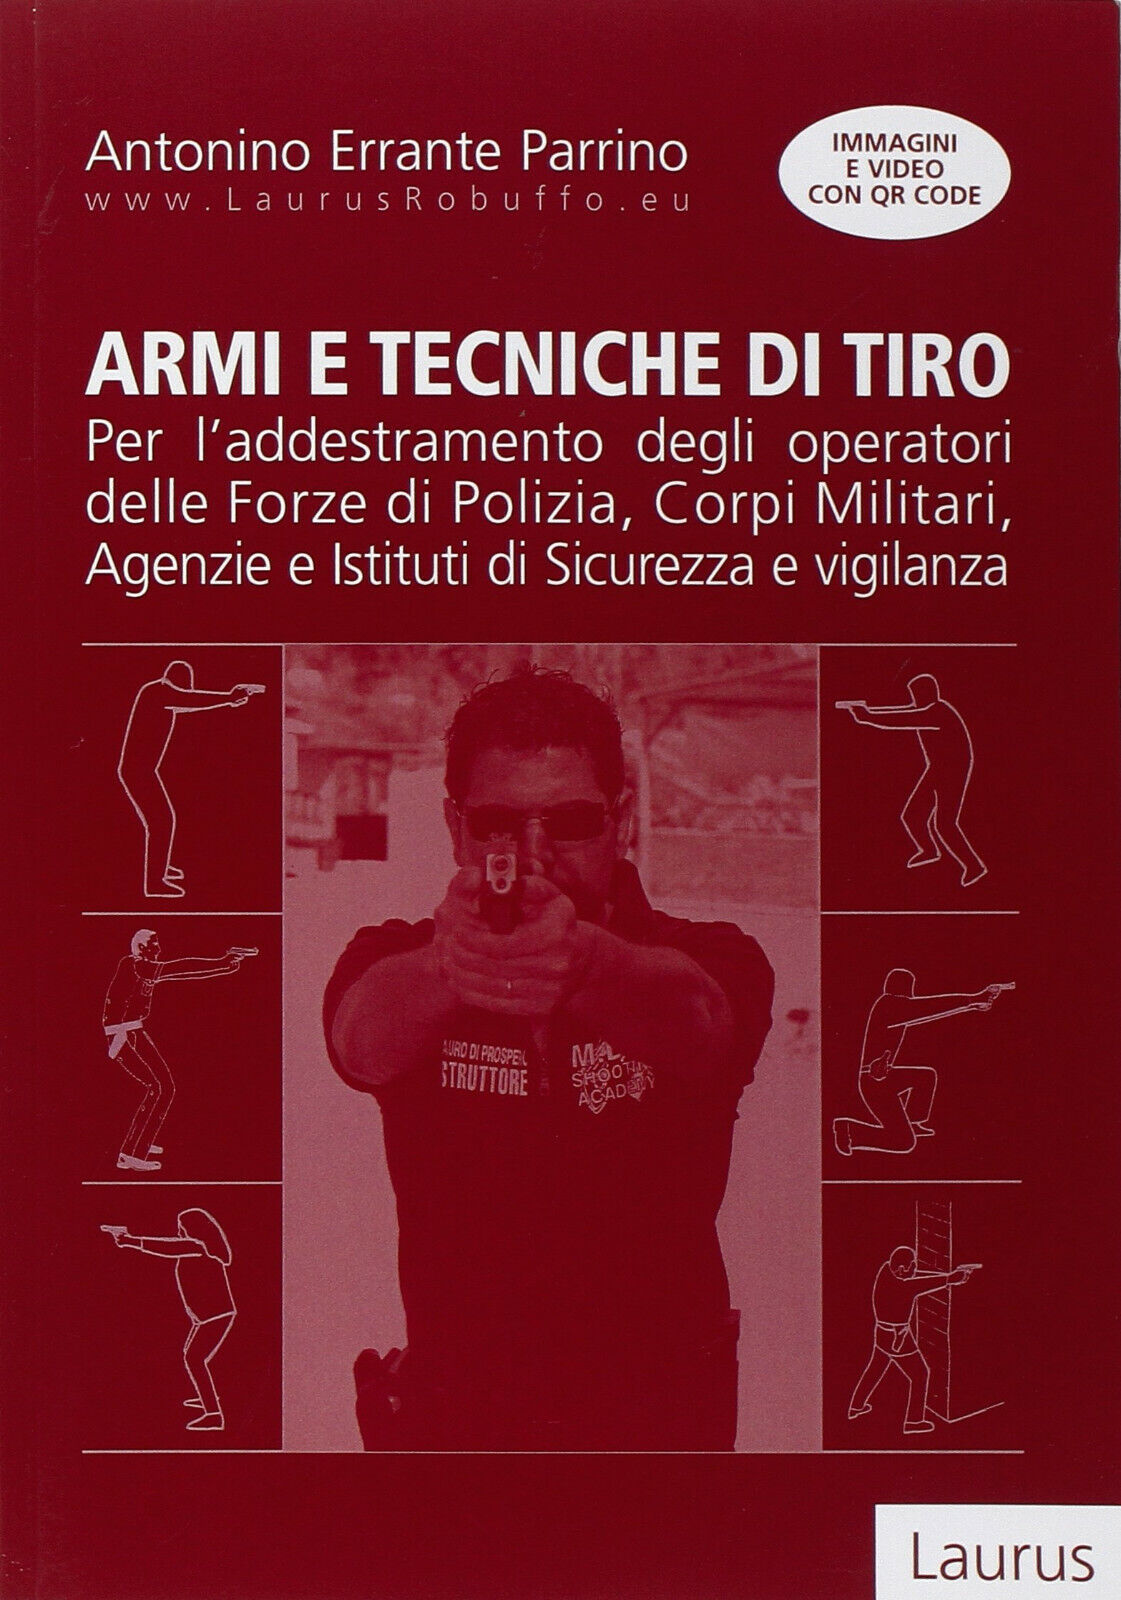 Armi e tecniche di tiro - Antonino Errante Parrino - Laurus Robuffo, 2014 libro usato